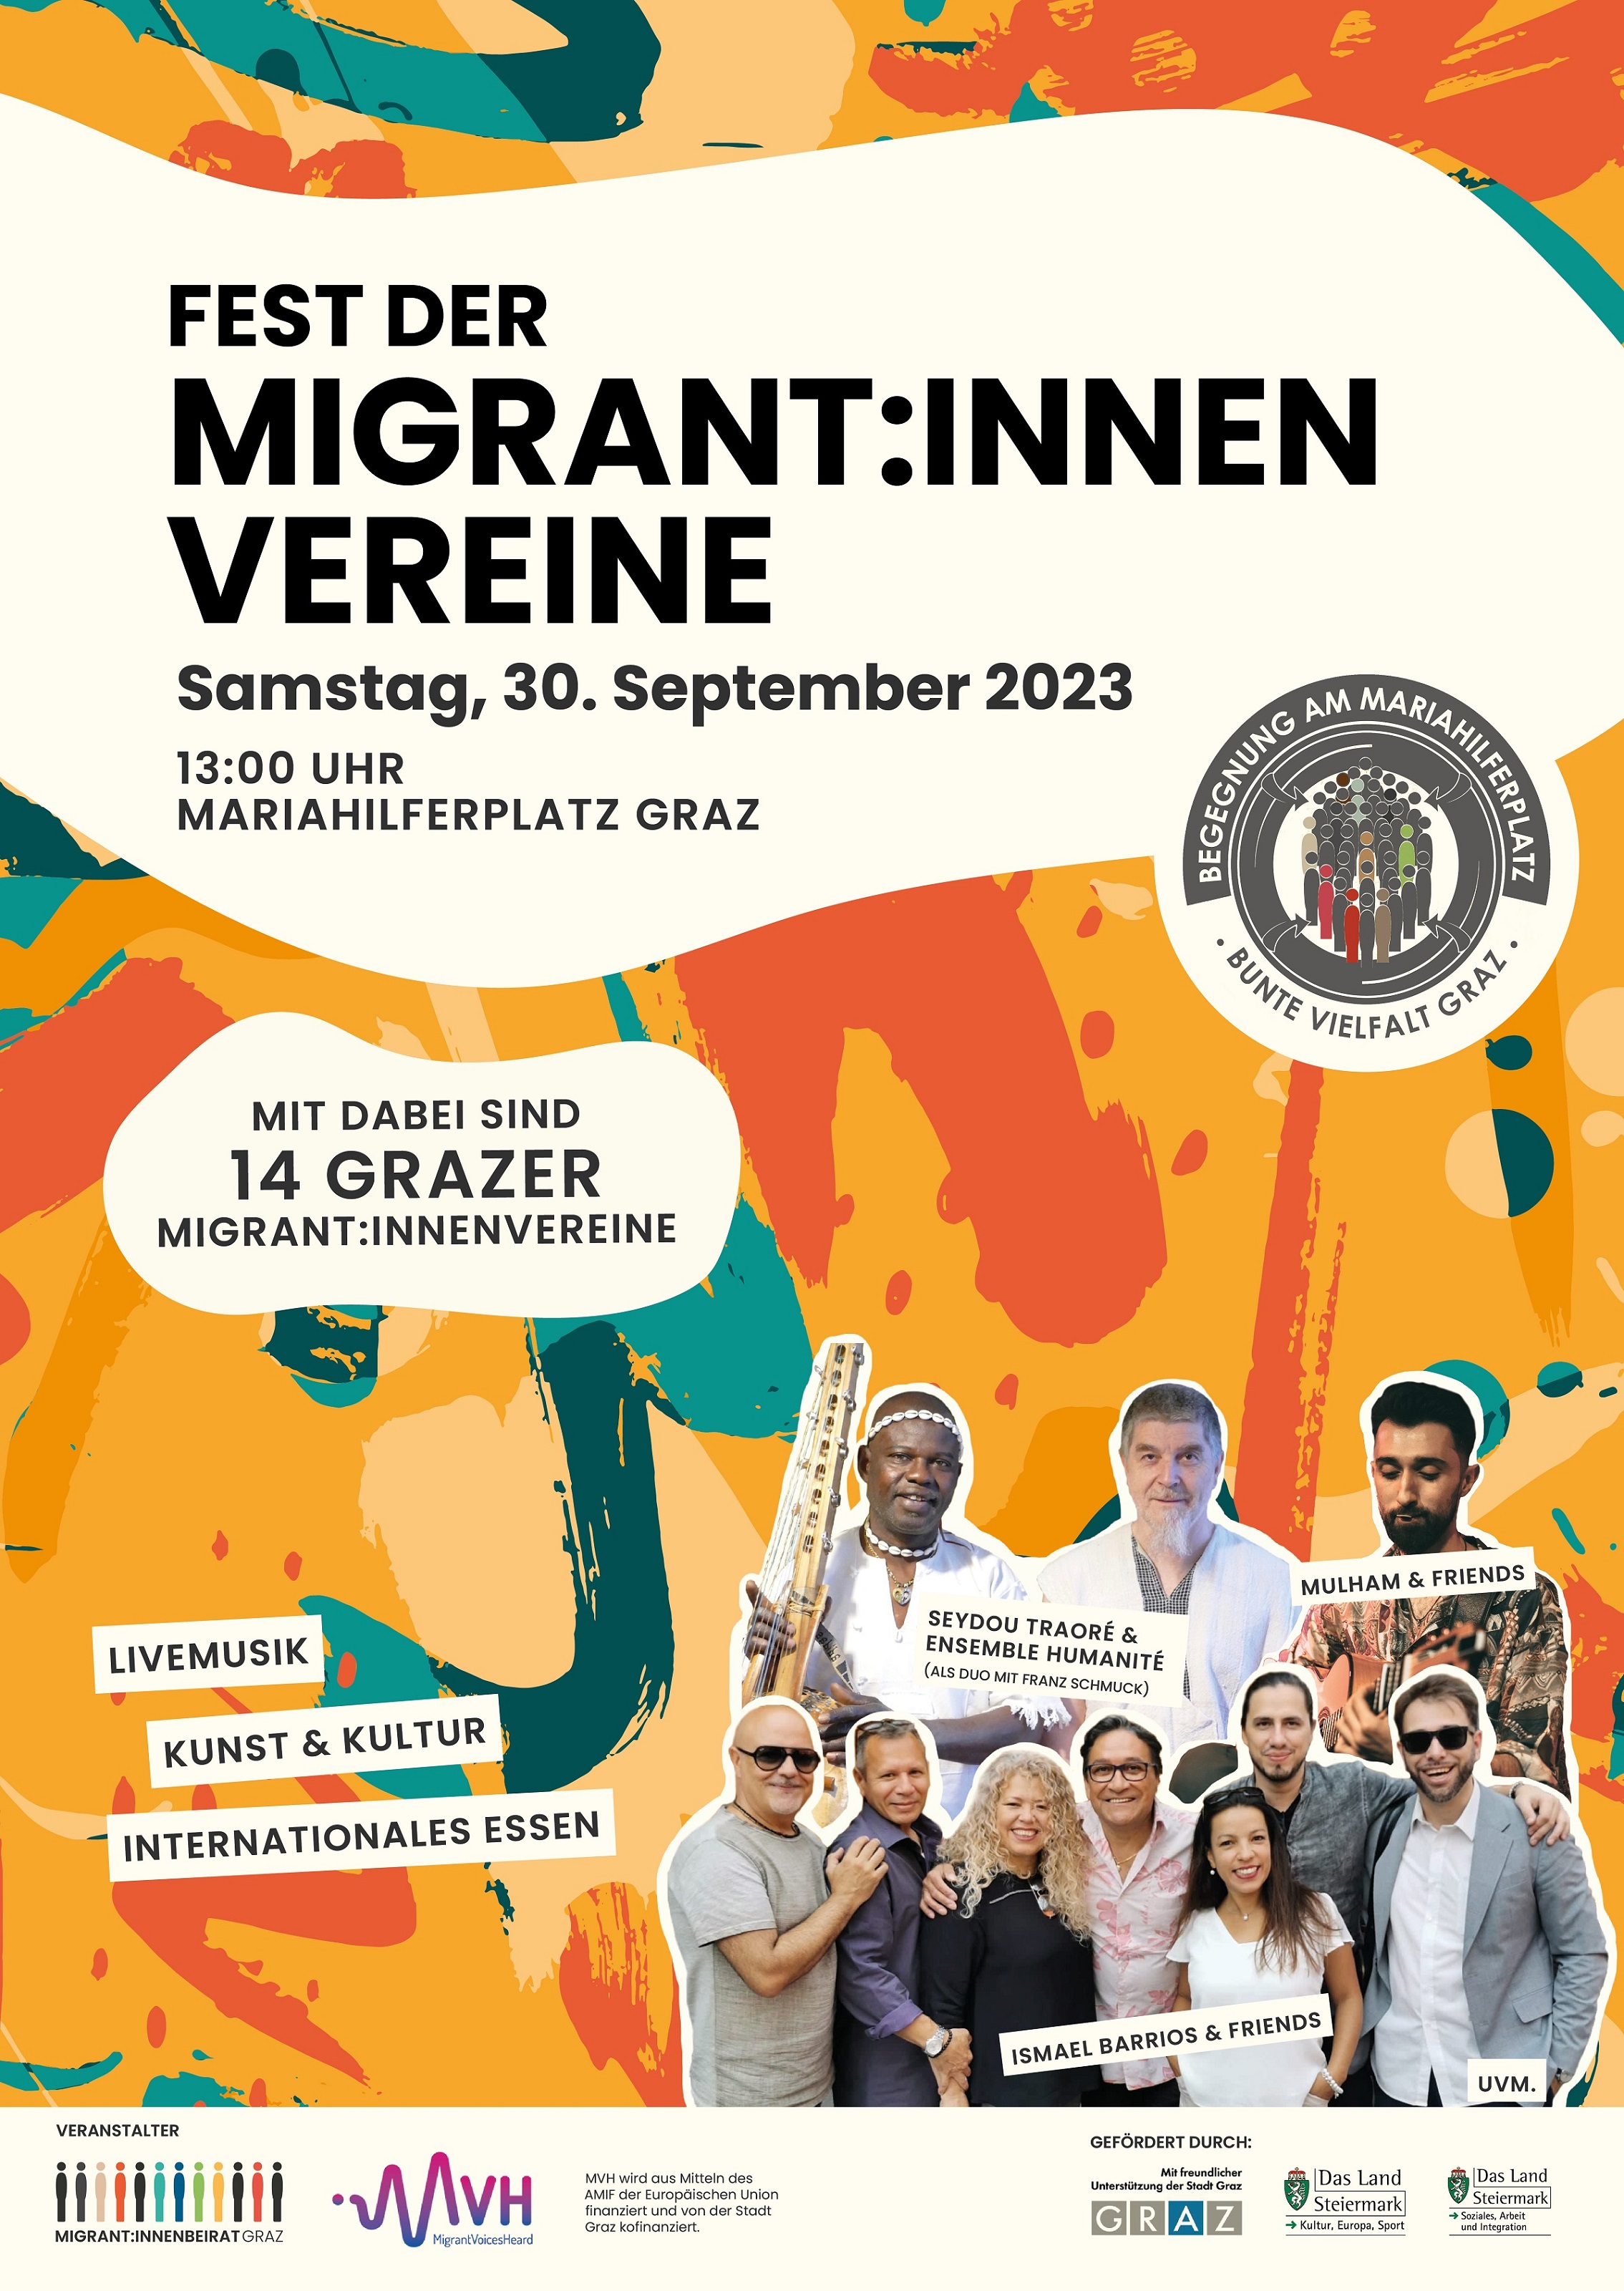 Fest der Migrant:innenvereine 2023